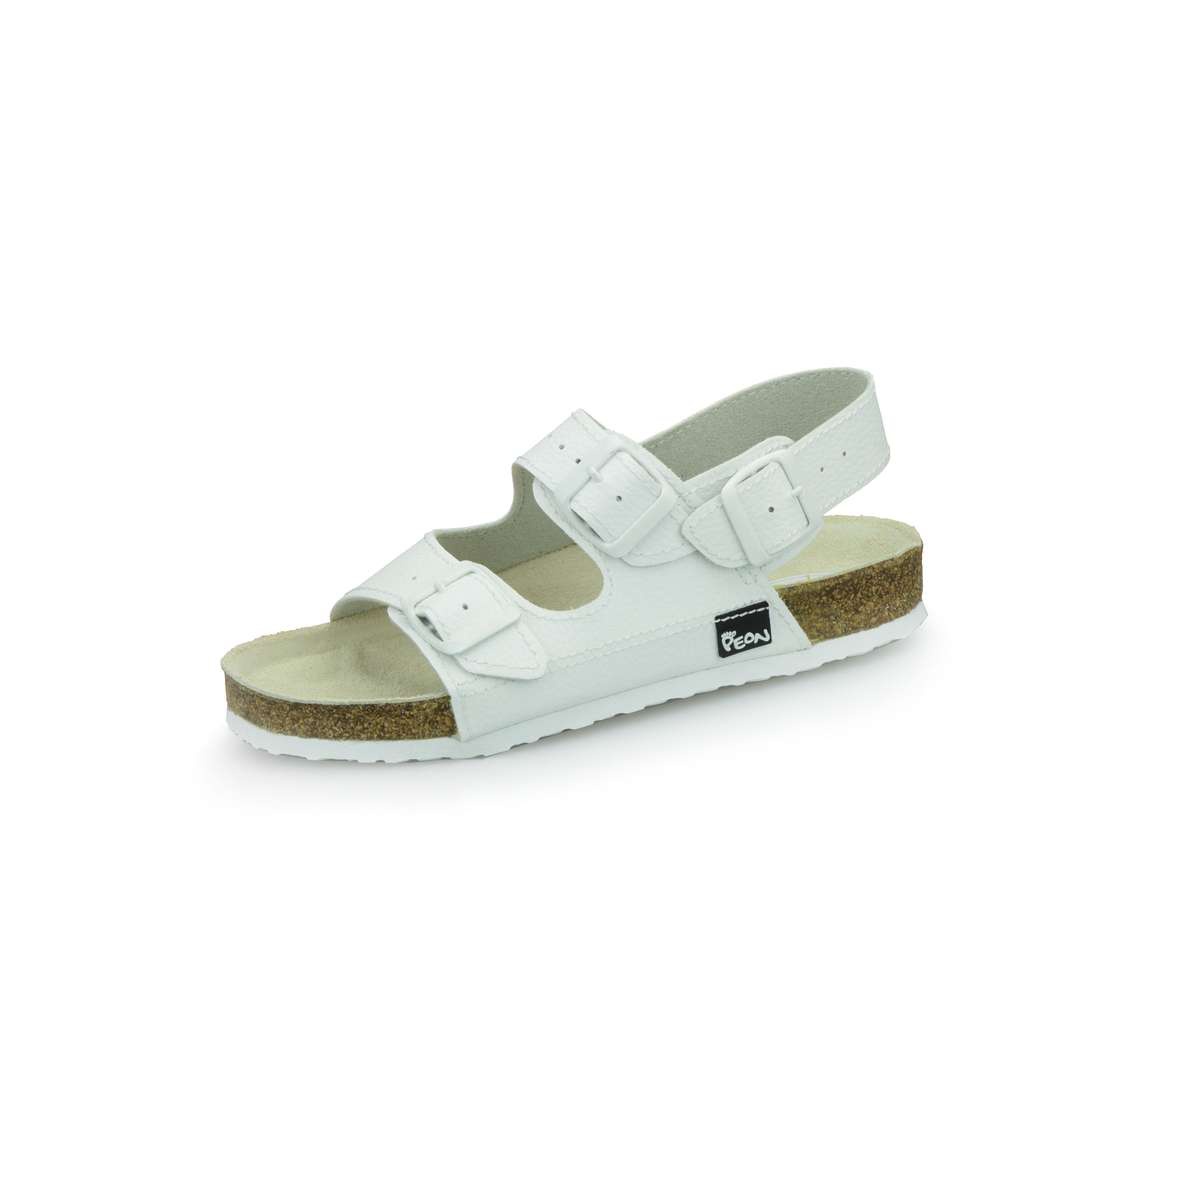 PEON PE/131-5 bílé dámské zdravotní korkové sandále BARVA: BÍLÁ, VELIKOST: 36